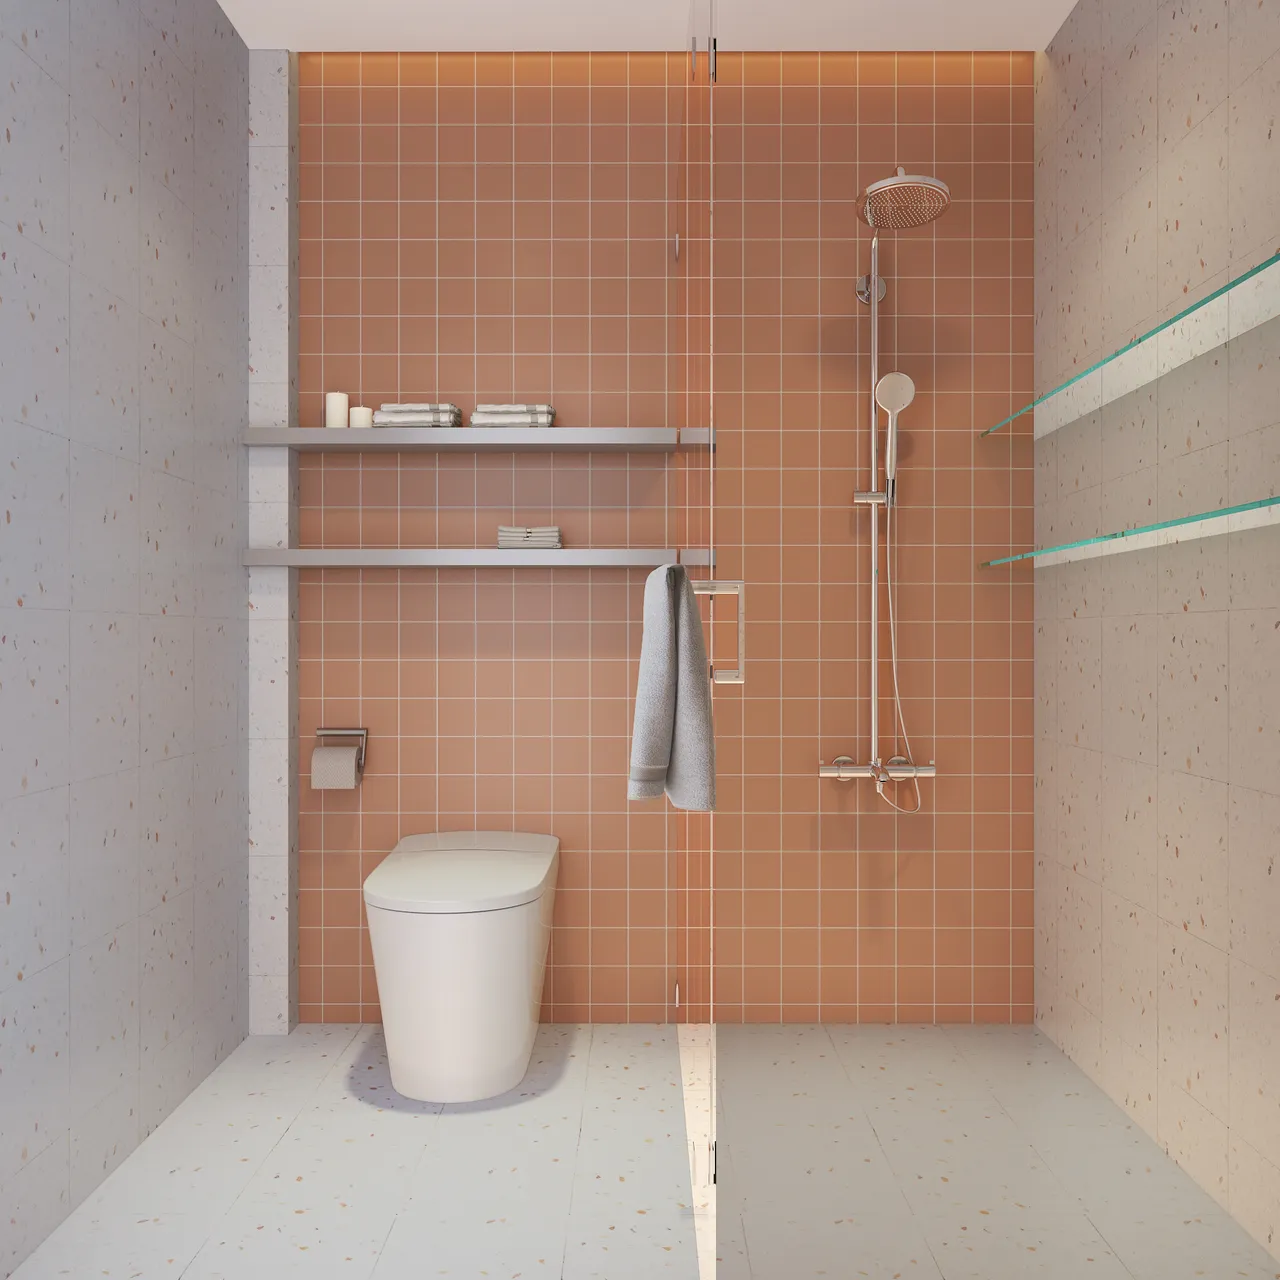  Phòng tắm - Nhà phố Thủ Đức - Phong cách Color Block + Scandinavian 